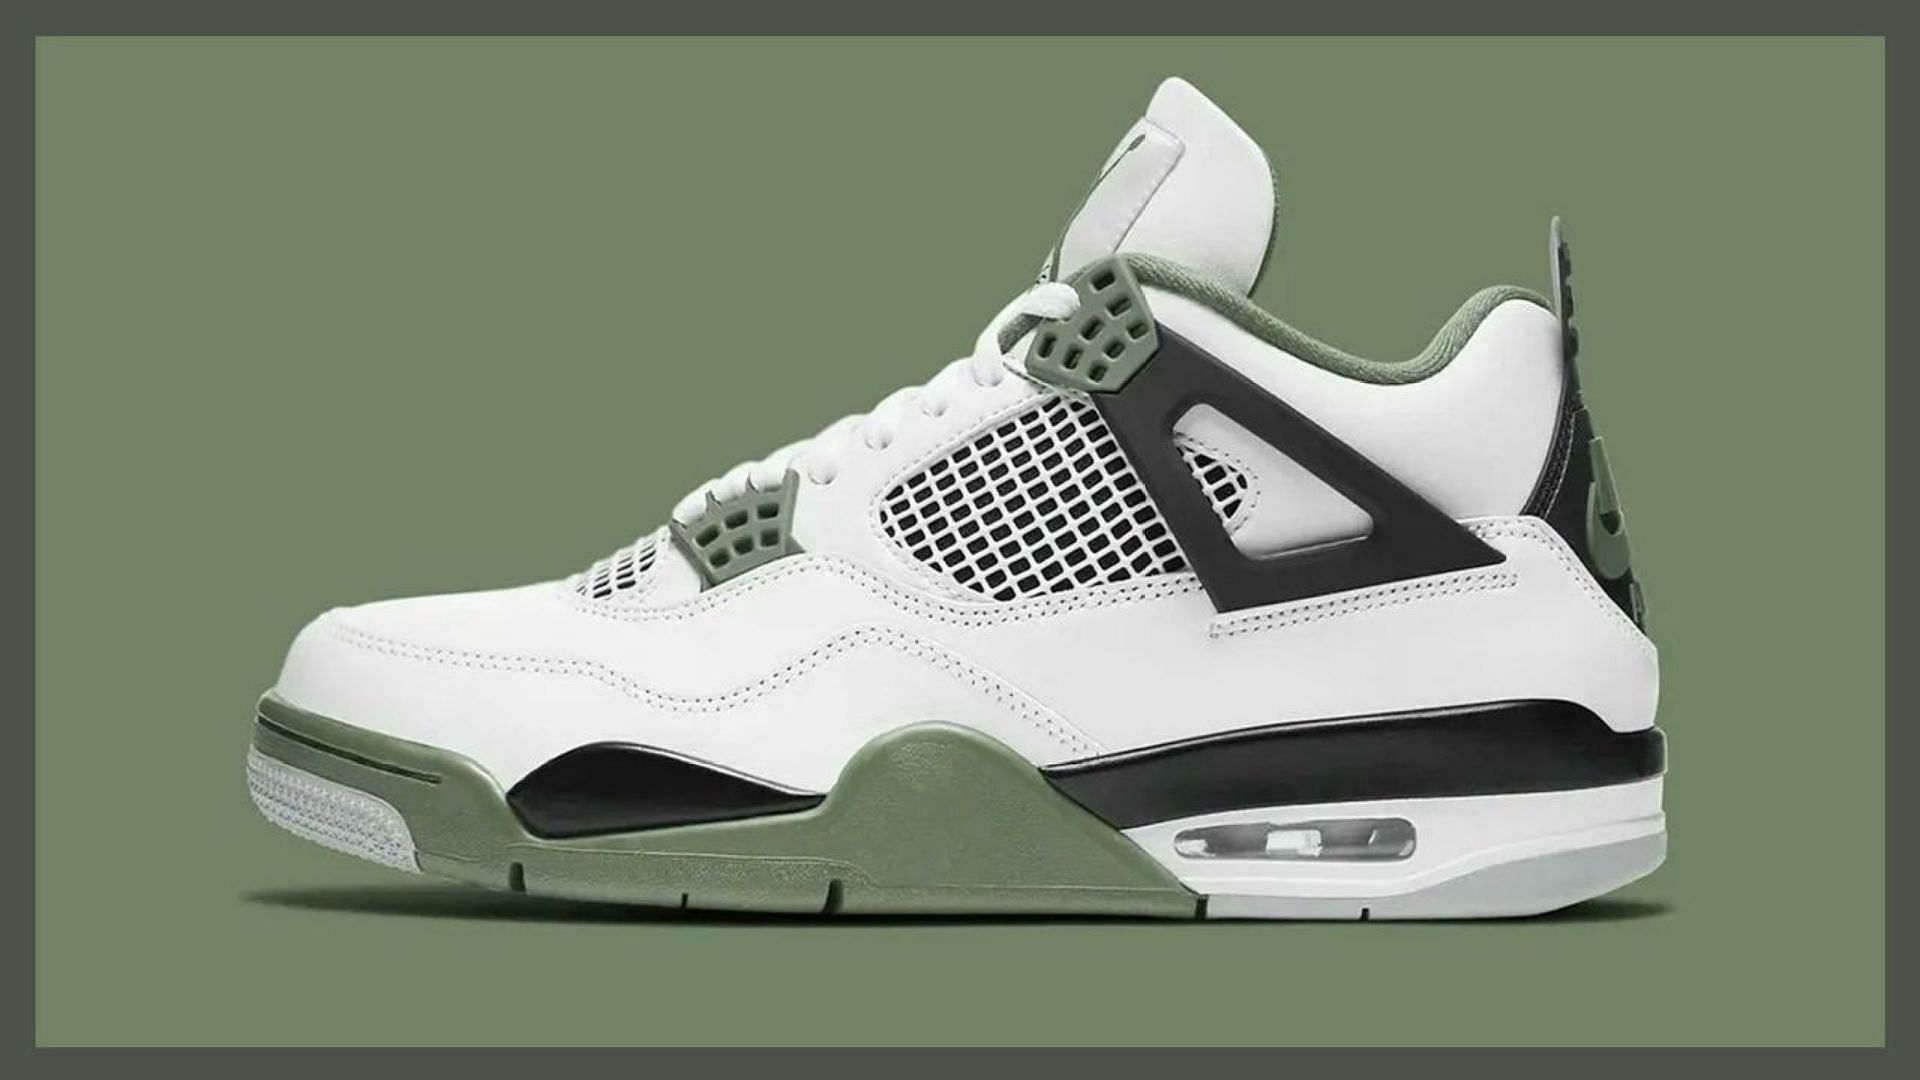 Nike Jordan 4 Green" sneakers: Where buy, price, date, and more explored